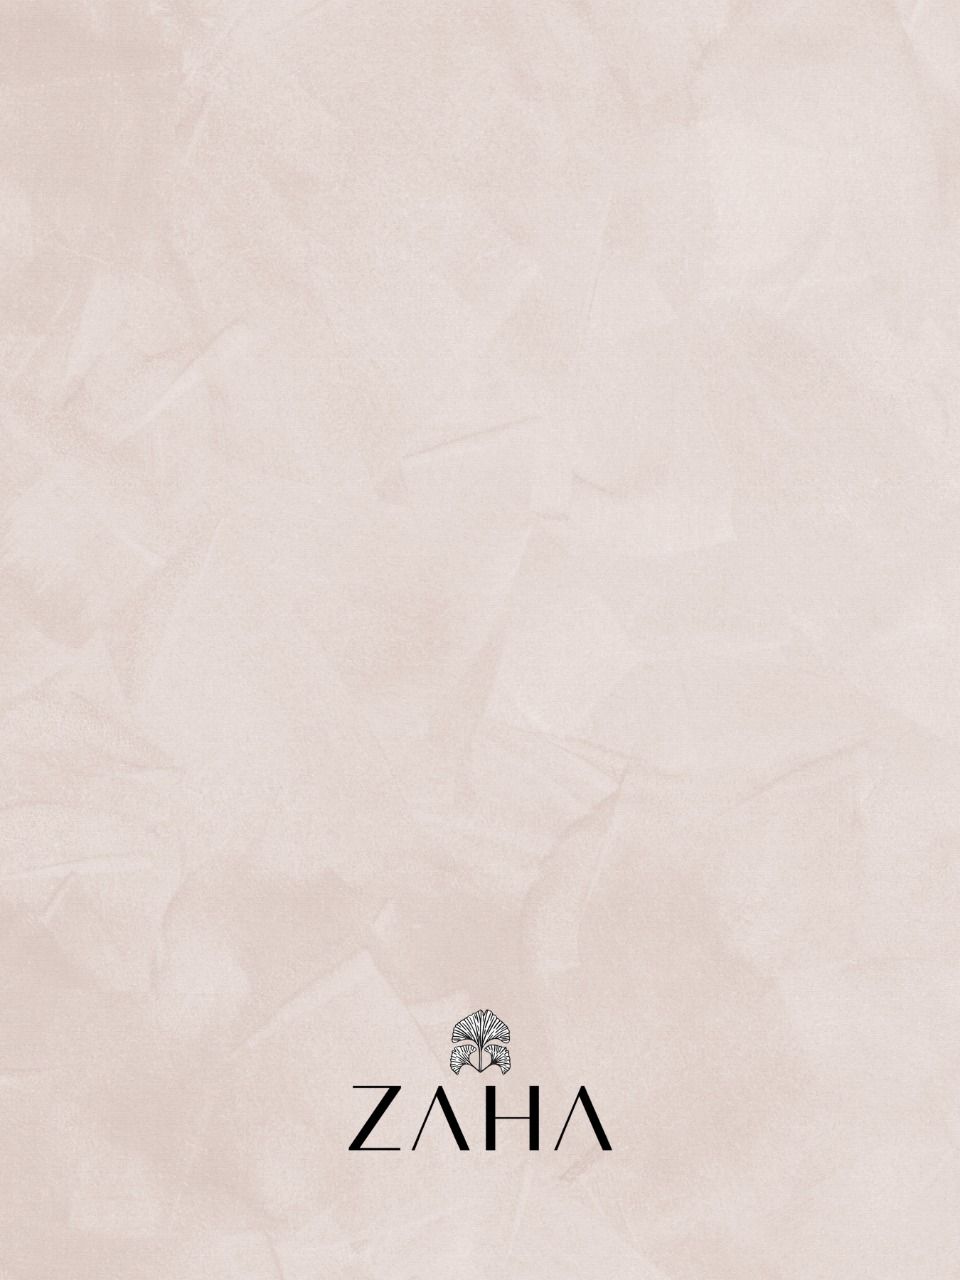 zaha chanterelle vol 2 georgette elegant salwar suit colour set